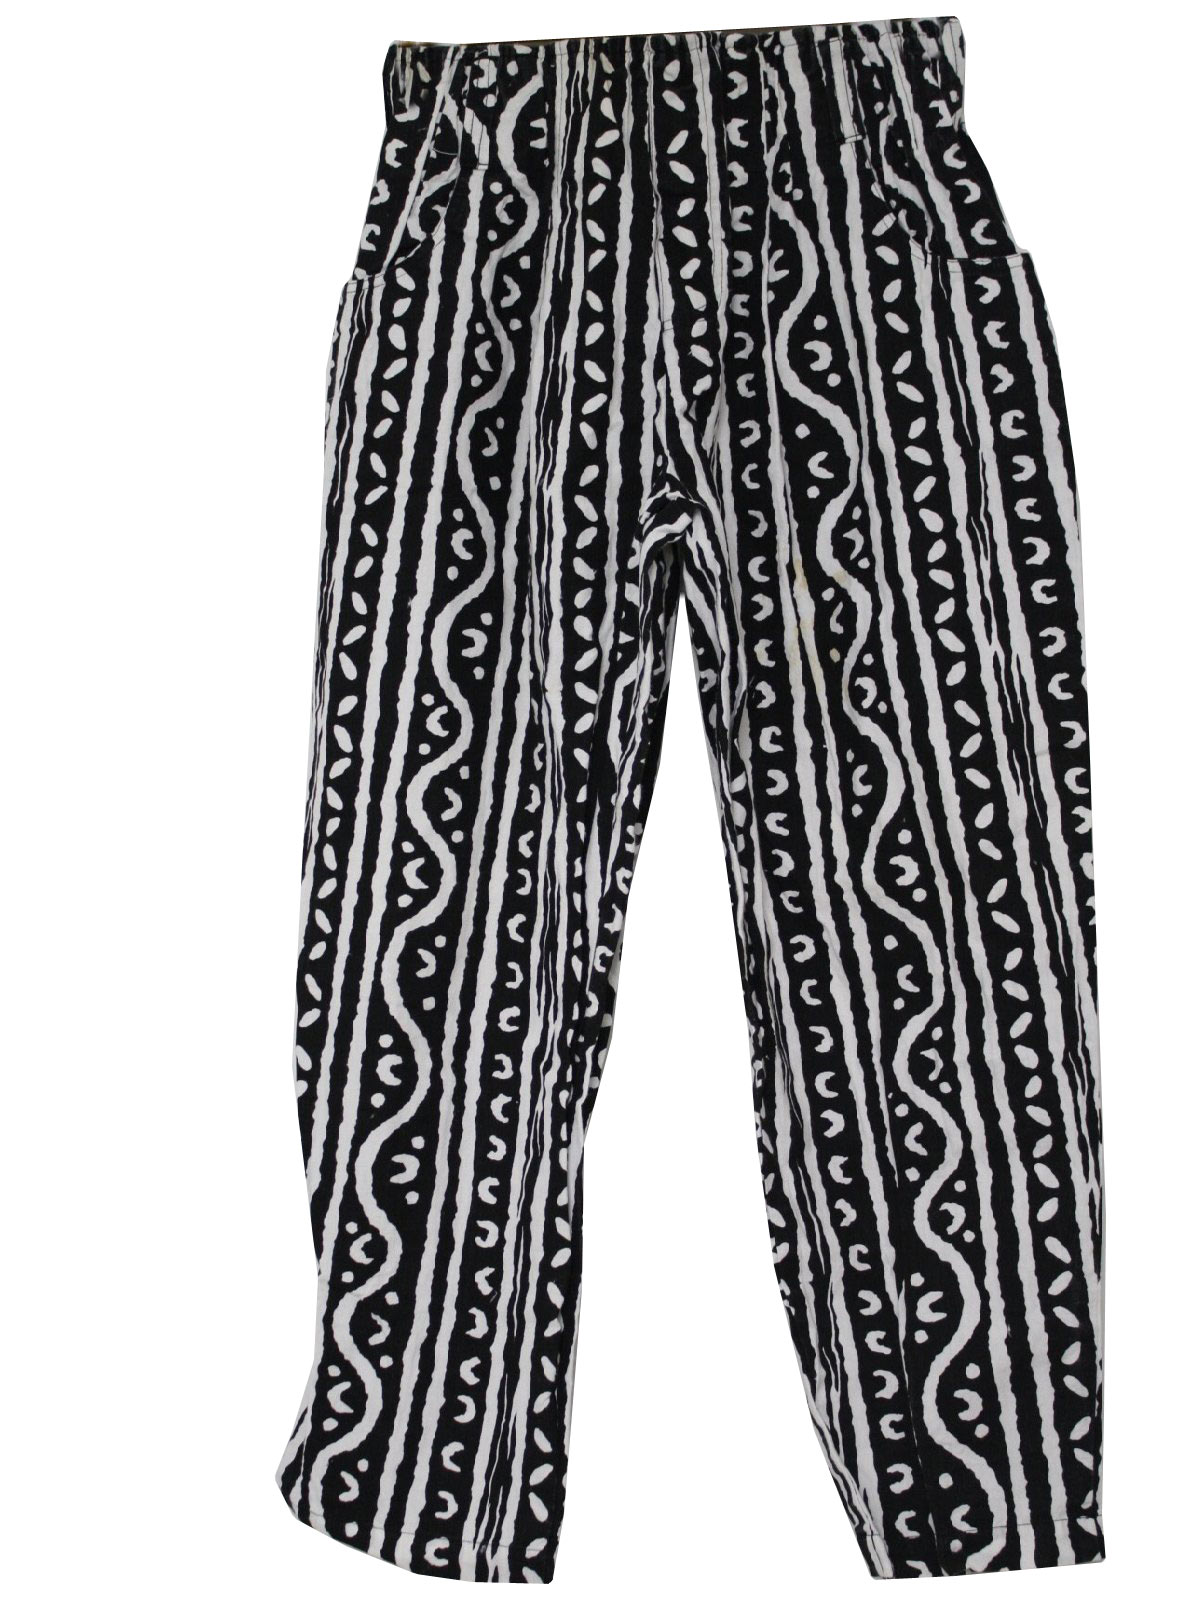 Vintage Wear in LA 80's Pants: 80s -Wear in LA- Mens black and white ...